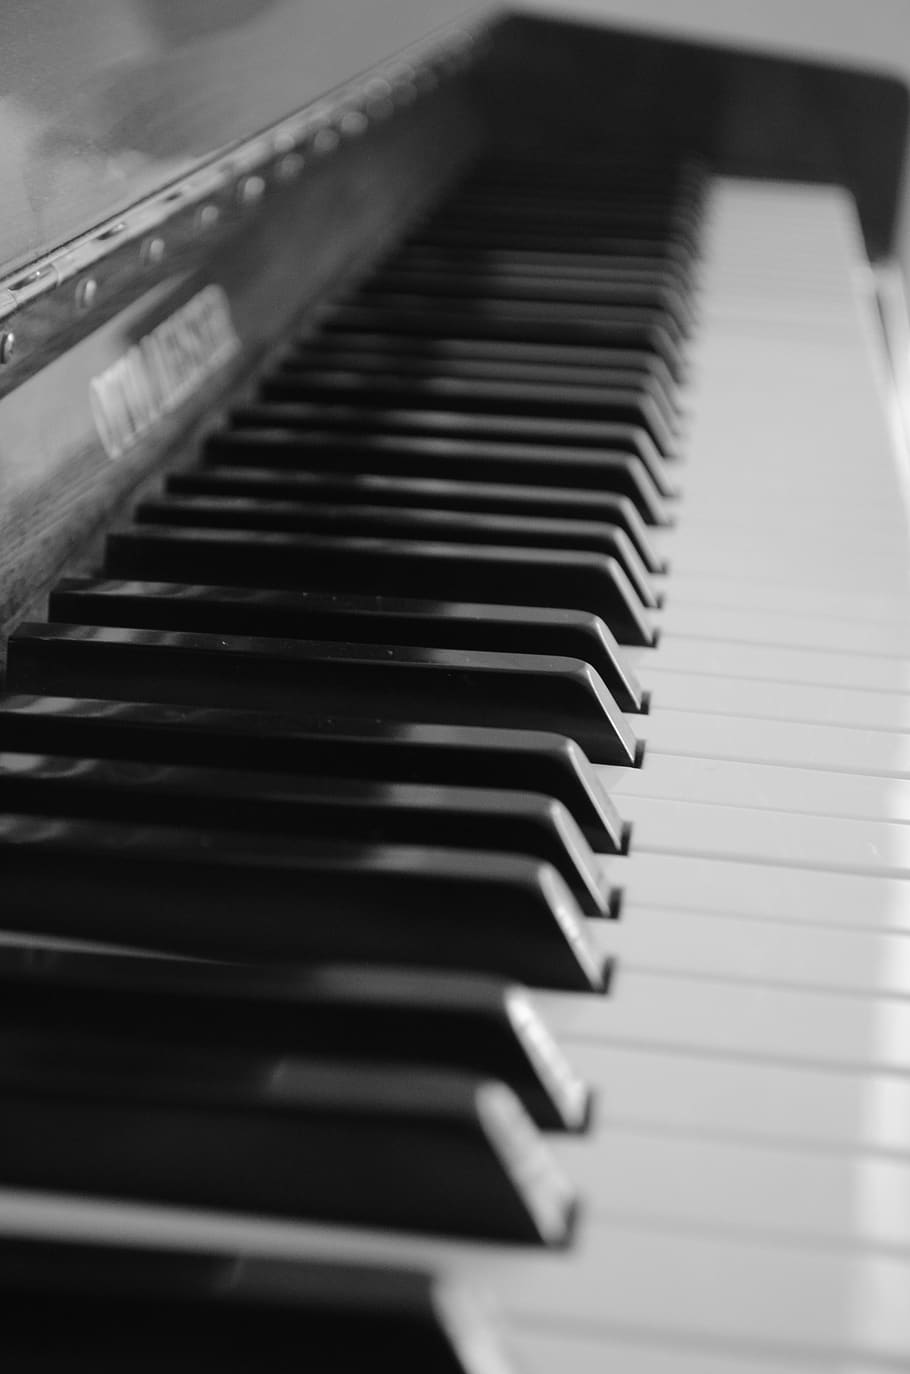 piano, teclado de piano, partituras, instrumento de teclado, notenblatt, teclas de piano, ala, sonido, concierto, teclas